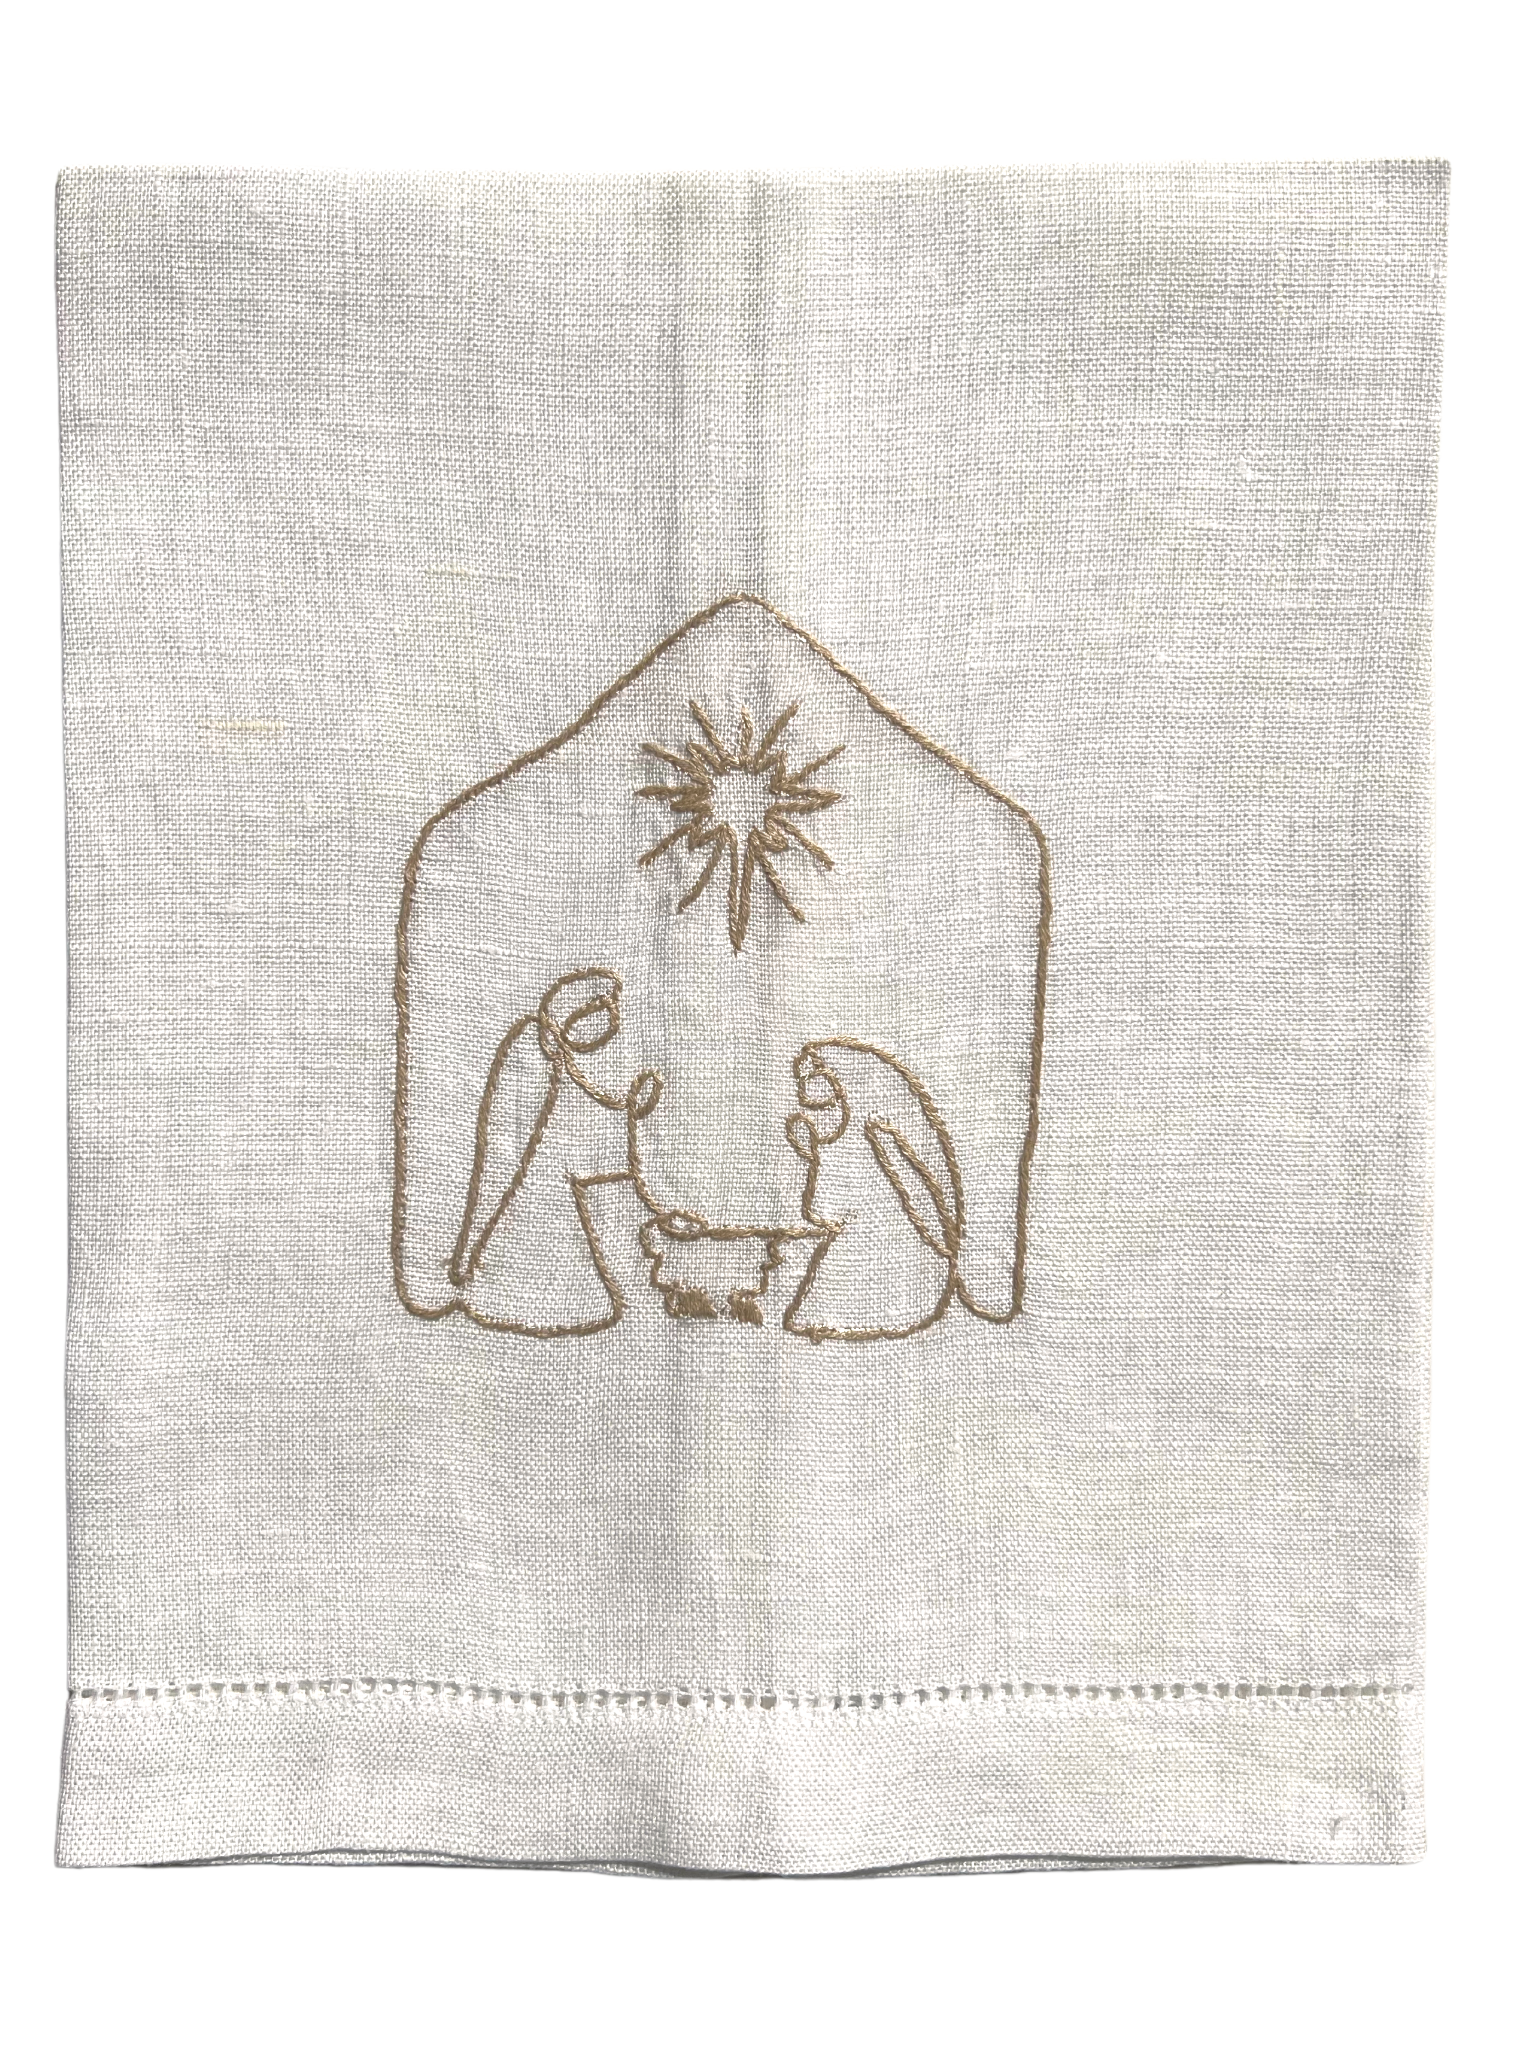 Nativity Towel